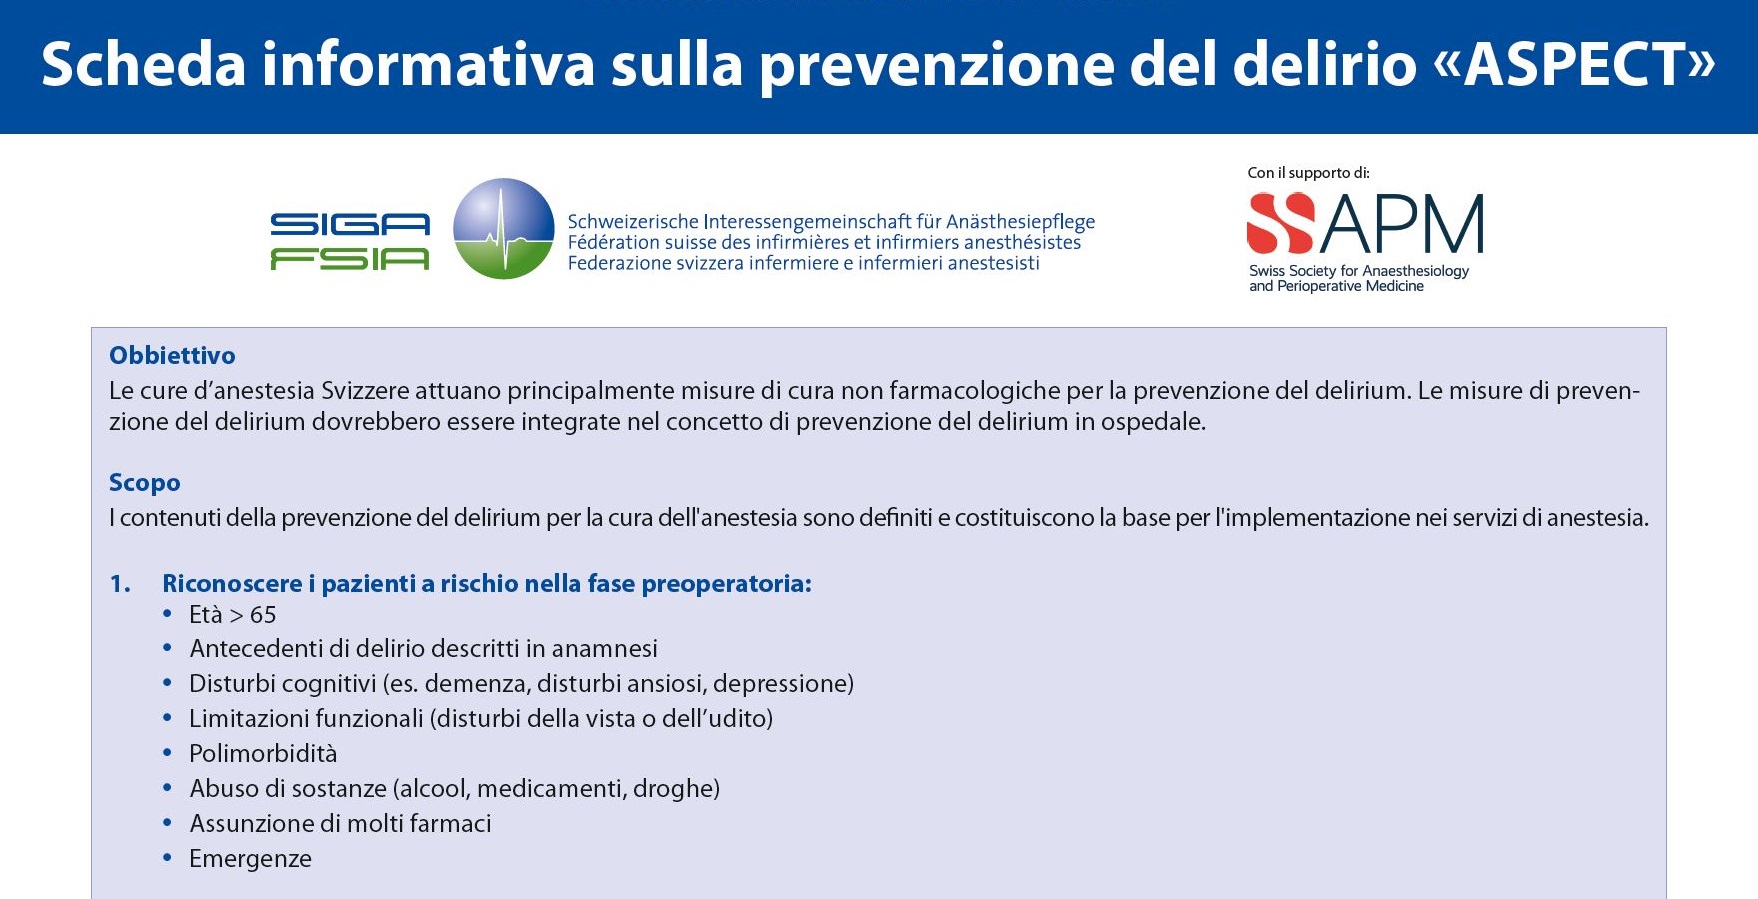 SIGA-FSIA, Merkblatt Delir jetzt auf Italienisch erhältlich